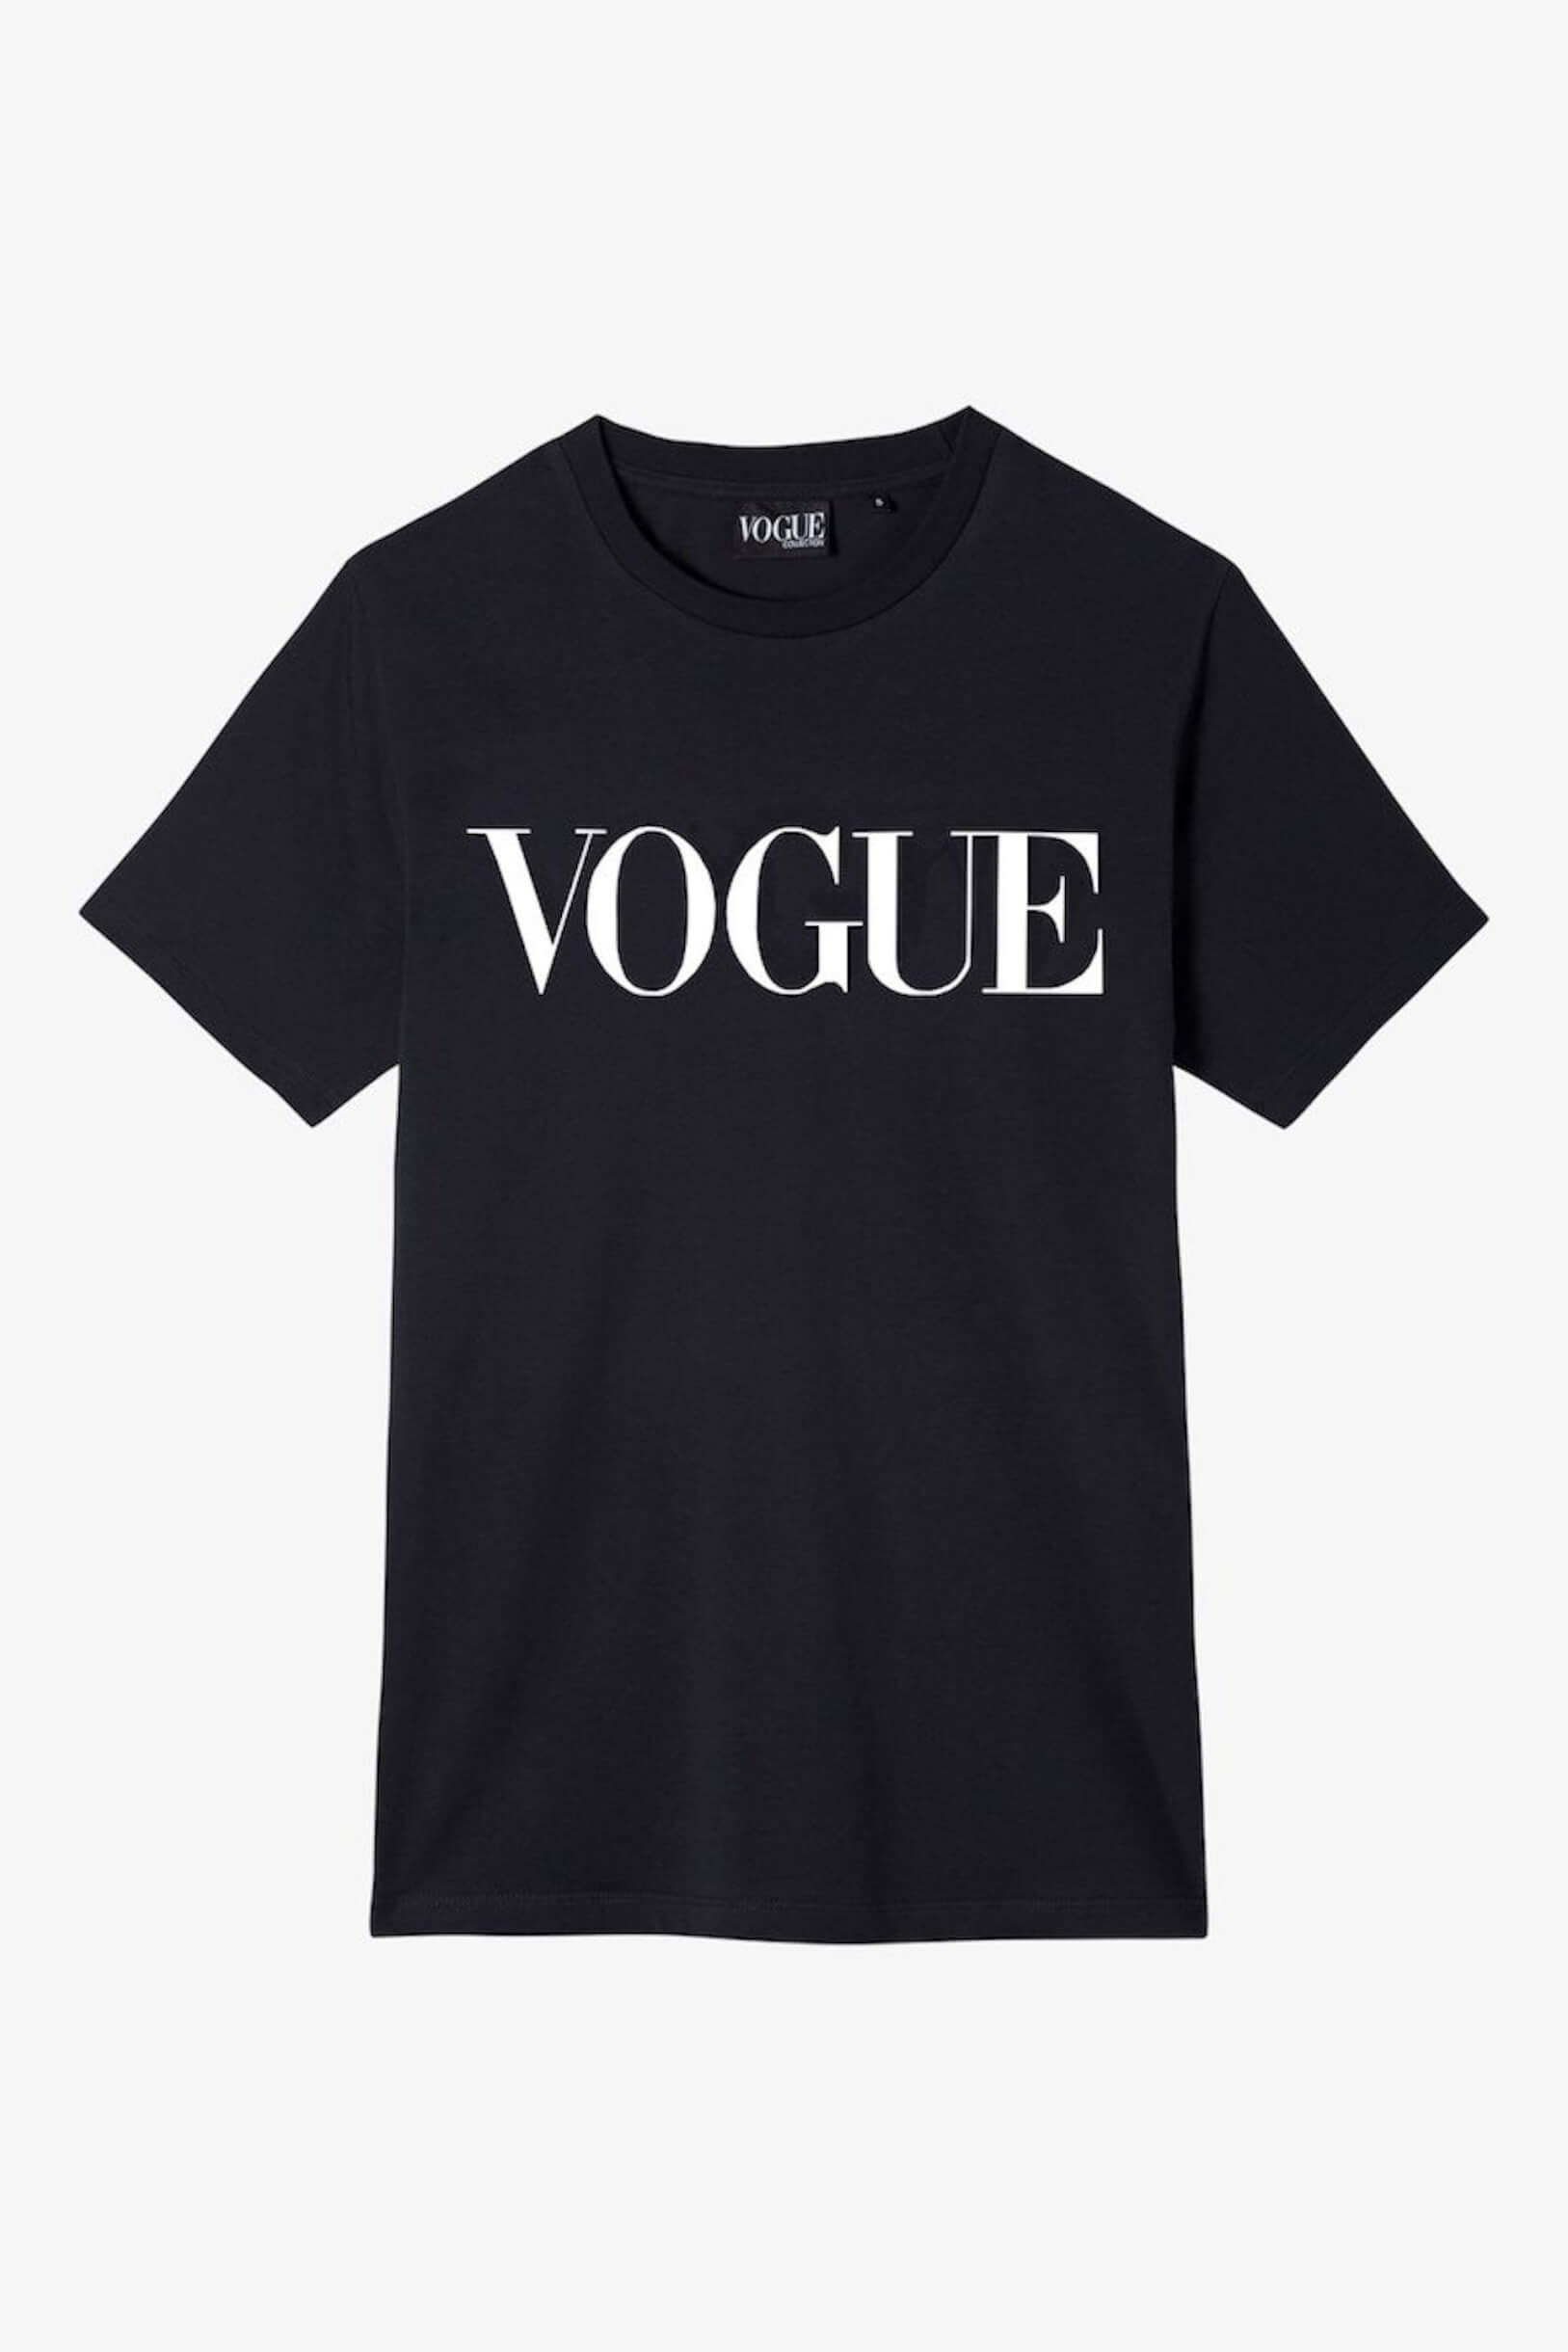 『VOGUE JAPAN』発の公式アパレルライン日本上陸｜Tシャツ、スウェット、パーカがラインナップ fashion220427_vogue-06